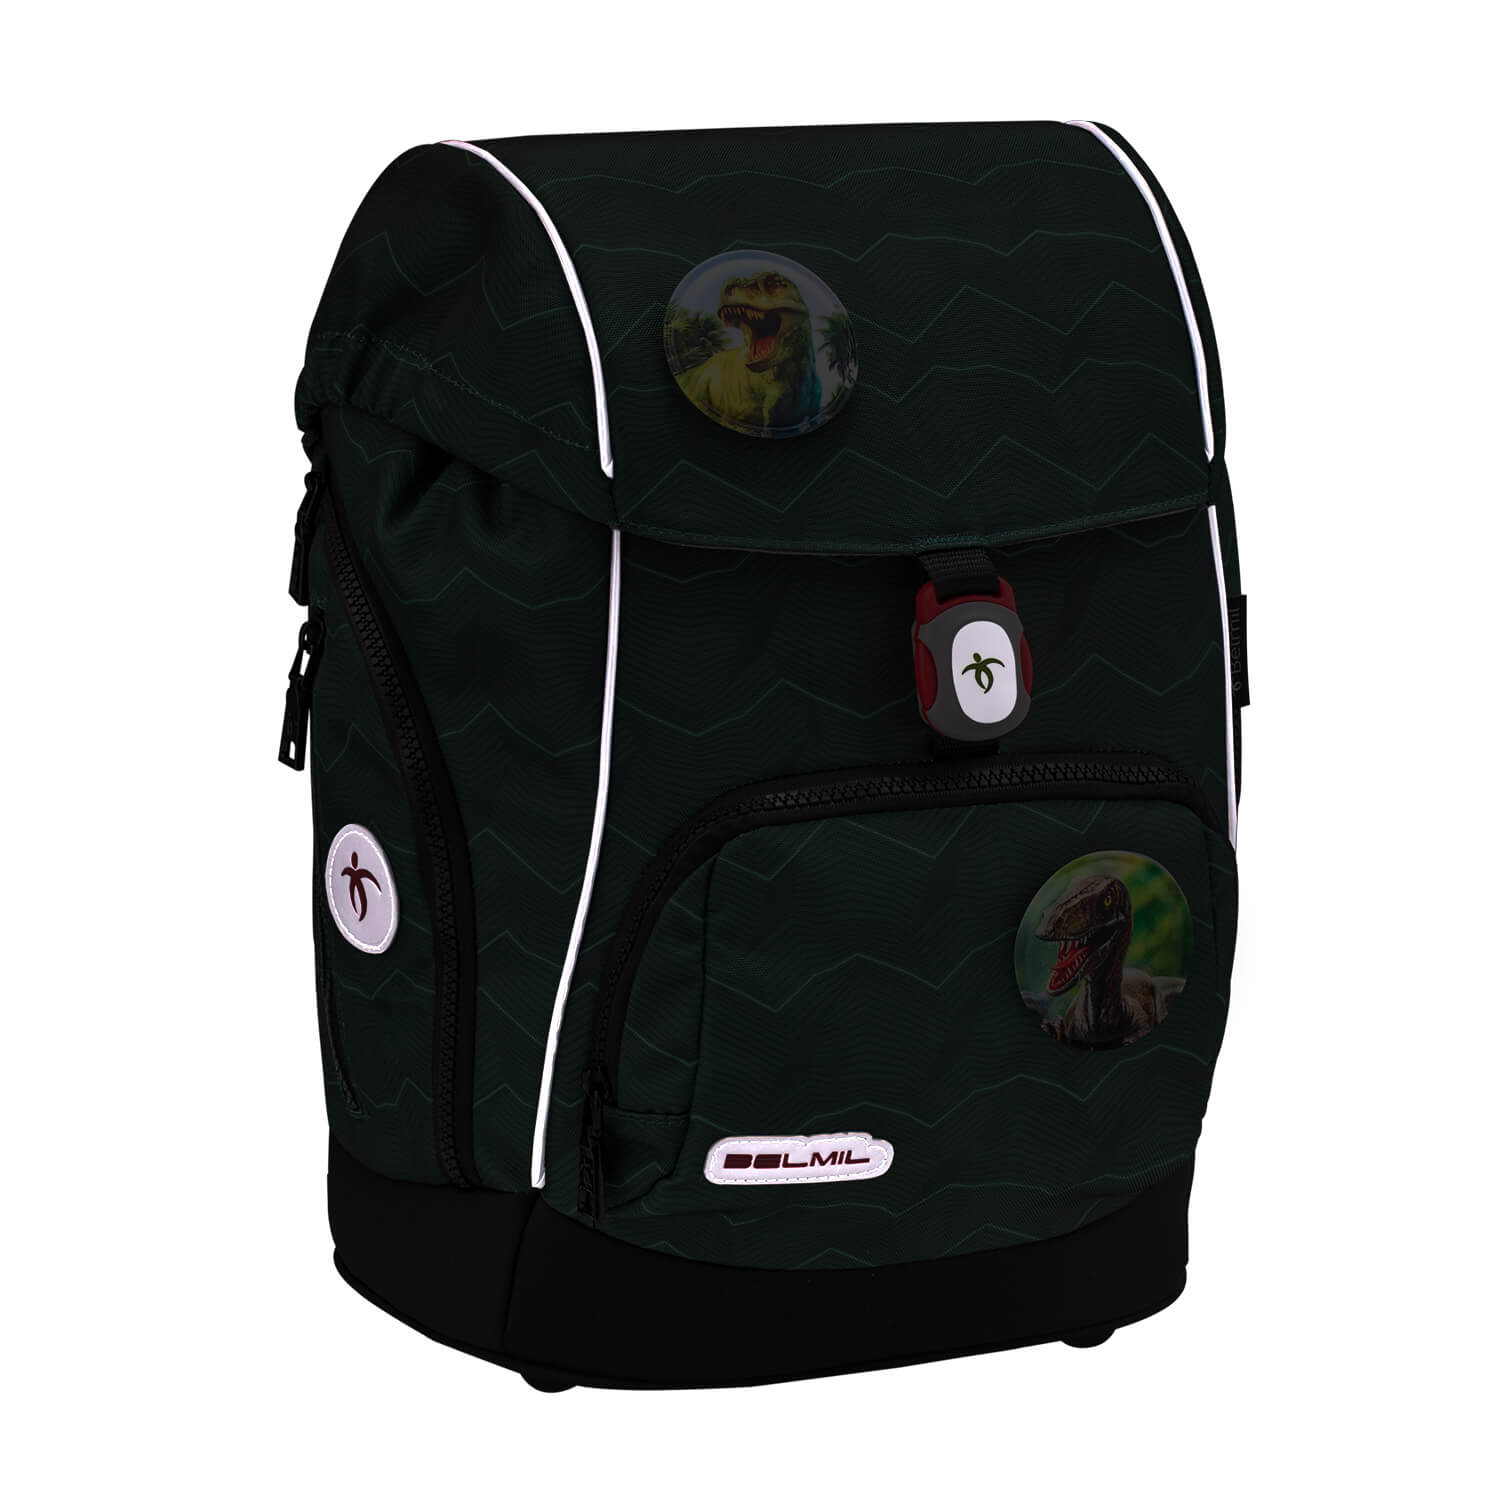 Premium Comfy Plus Twist of Lime Schoolbag set 5pcs.